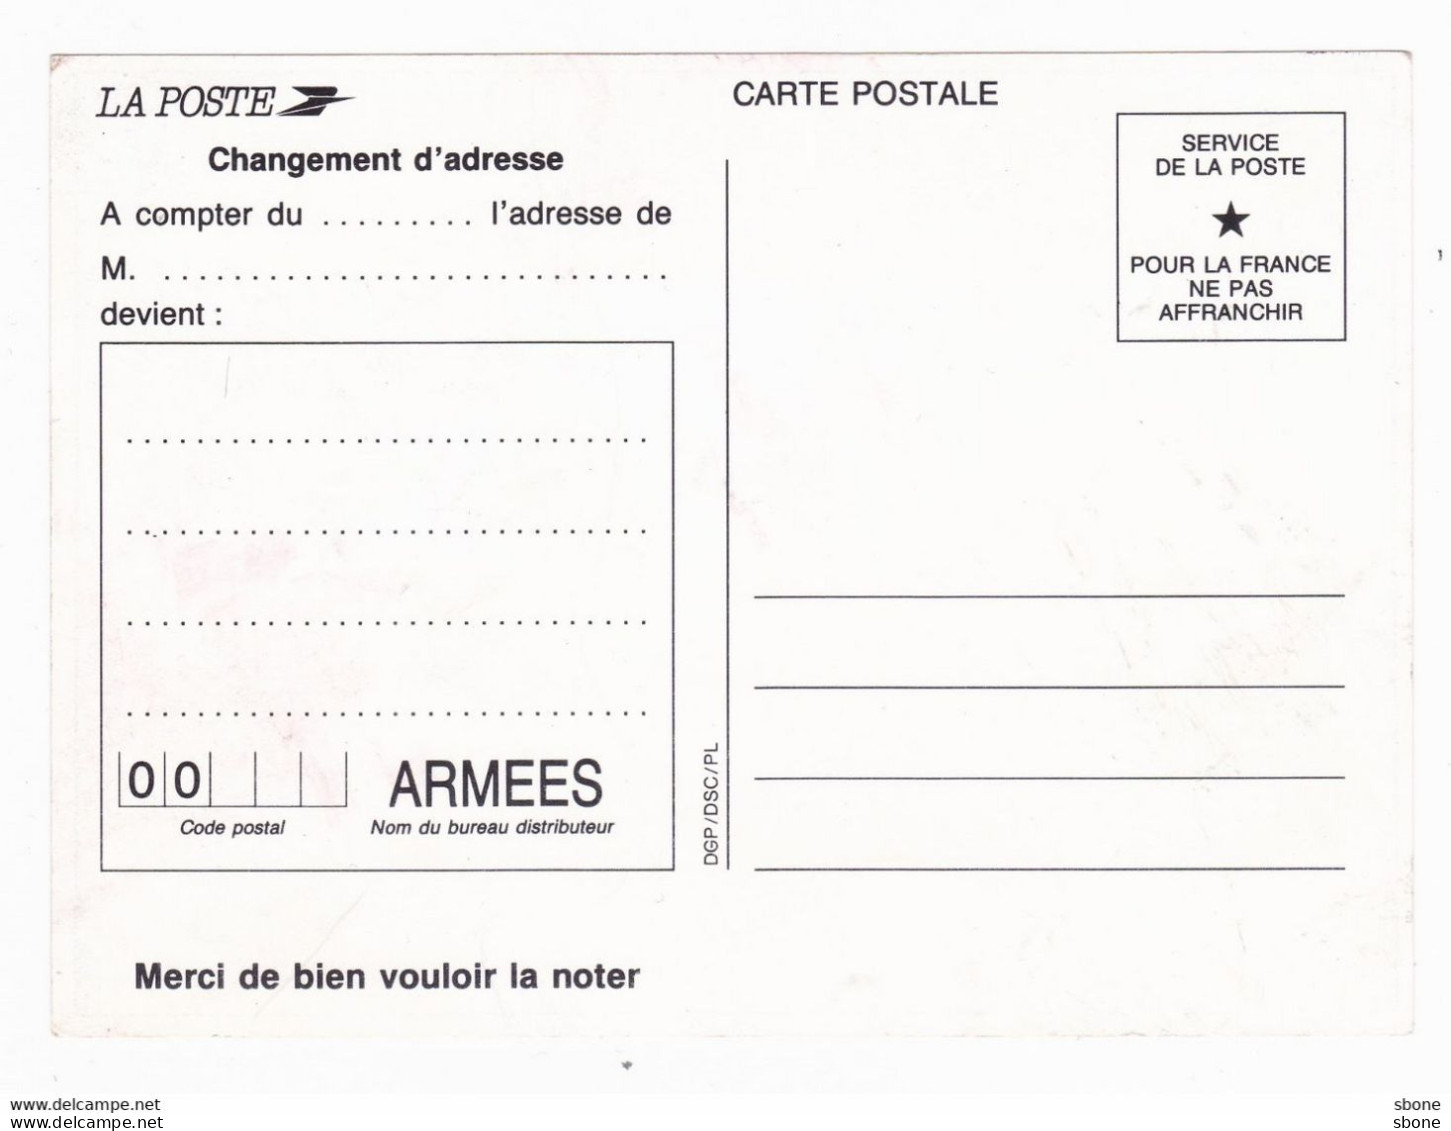 Carte En Franchise Militaire - Et Surtout N'oubliez Pas Notre Code Postal - Briefe U. Dokumente